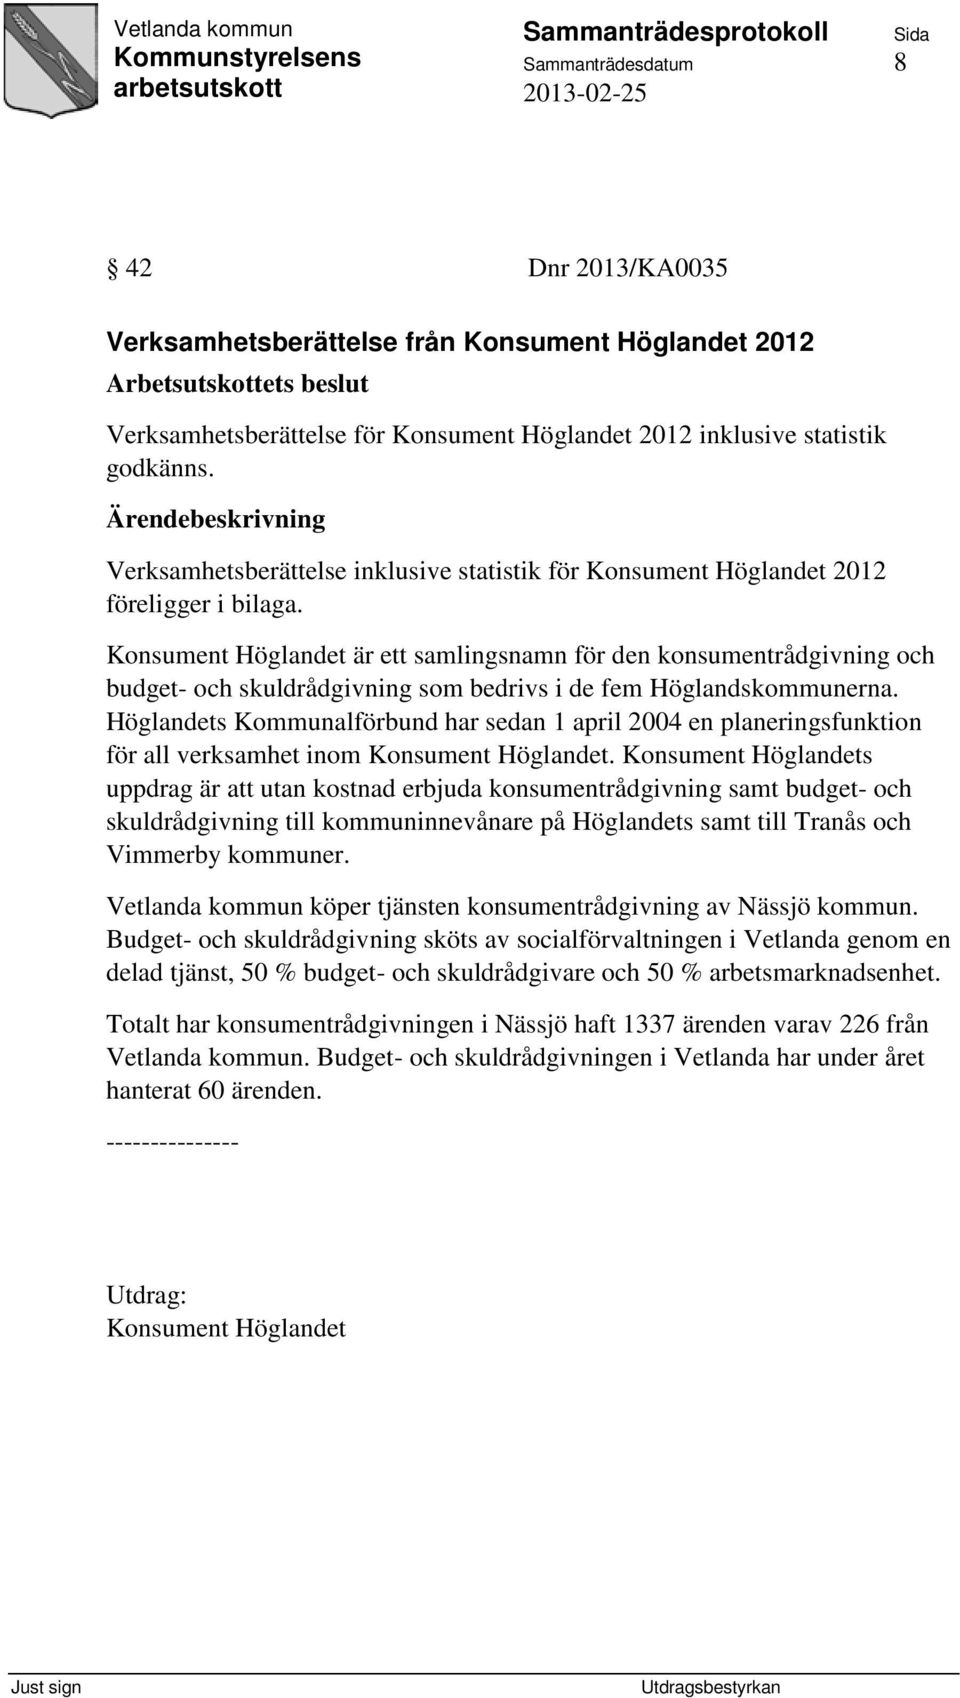 Konsument Höglandet är ett samlingsnamn för den konsumentrådgivning och budget- och skuldrådgivning som bedrivs i de fem Höglandskommunerna.